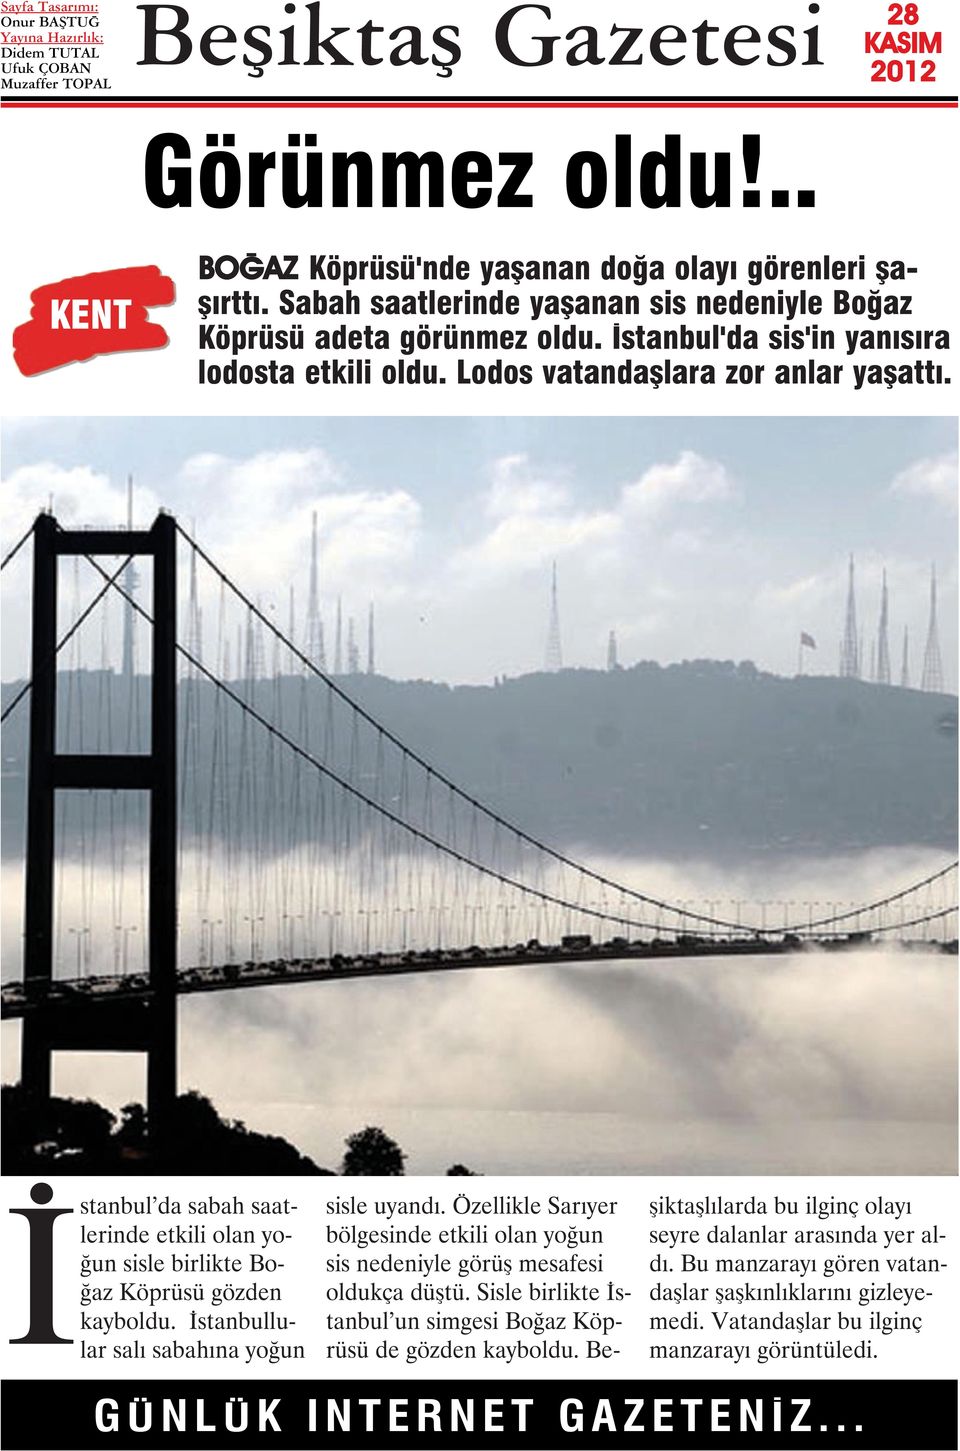 İstanbul da sabah saatlerinde etkili olan yoğun sisle birlikte Boğaz Köprüsü gözden kayboldu. İstanbullular salı sabahına yoğun sisle uyandı.